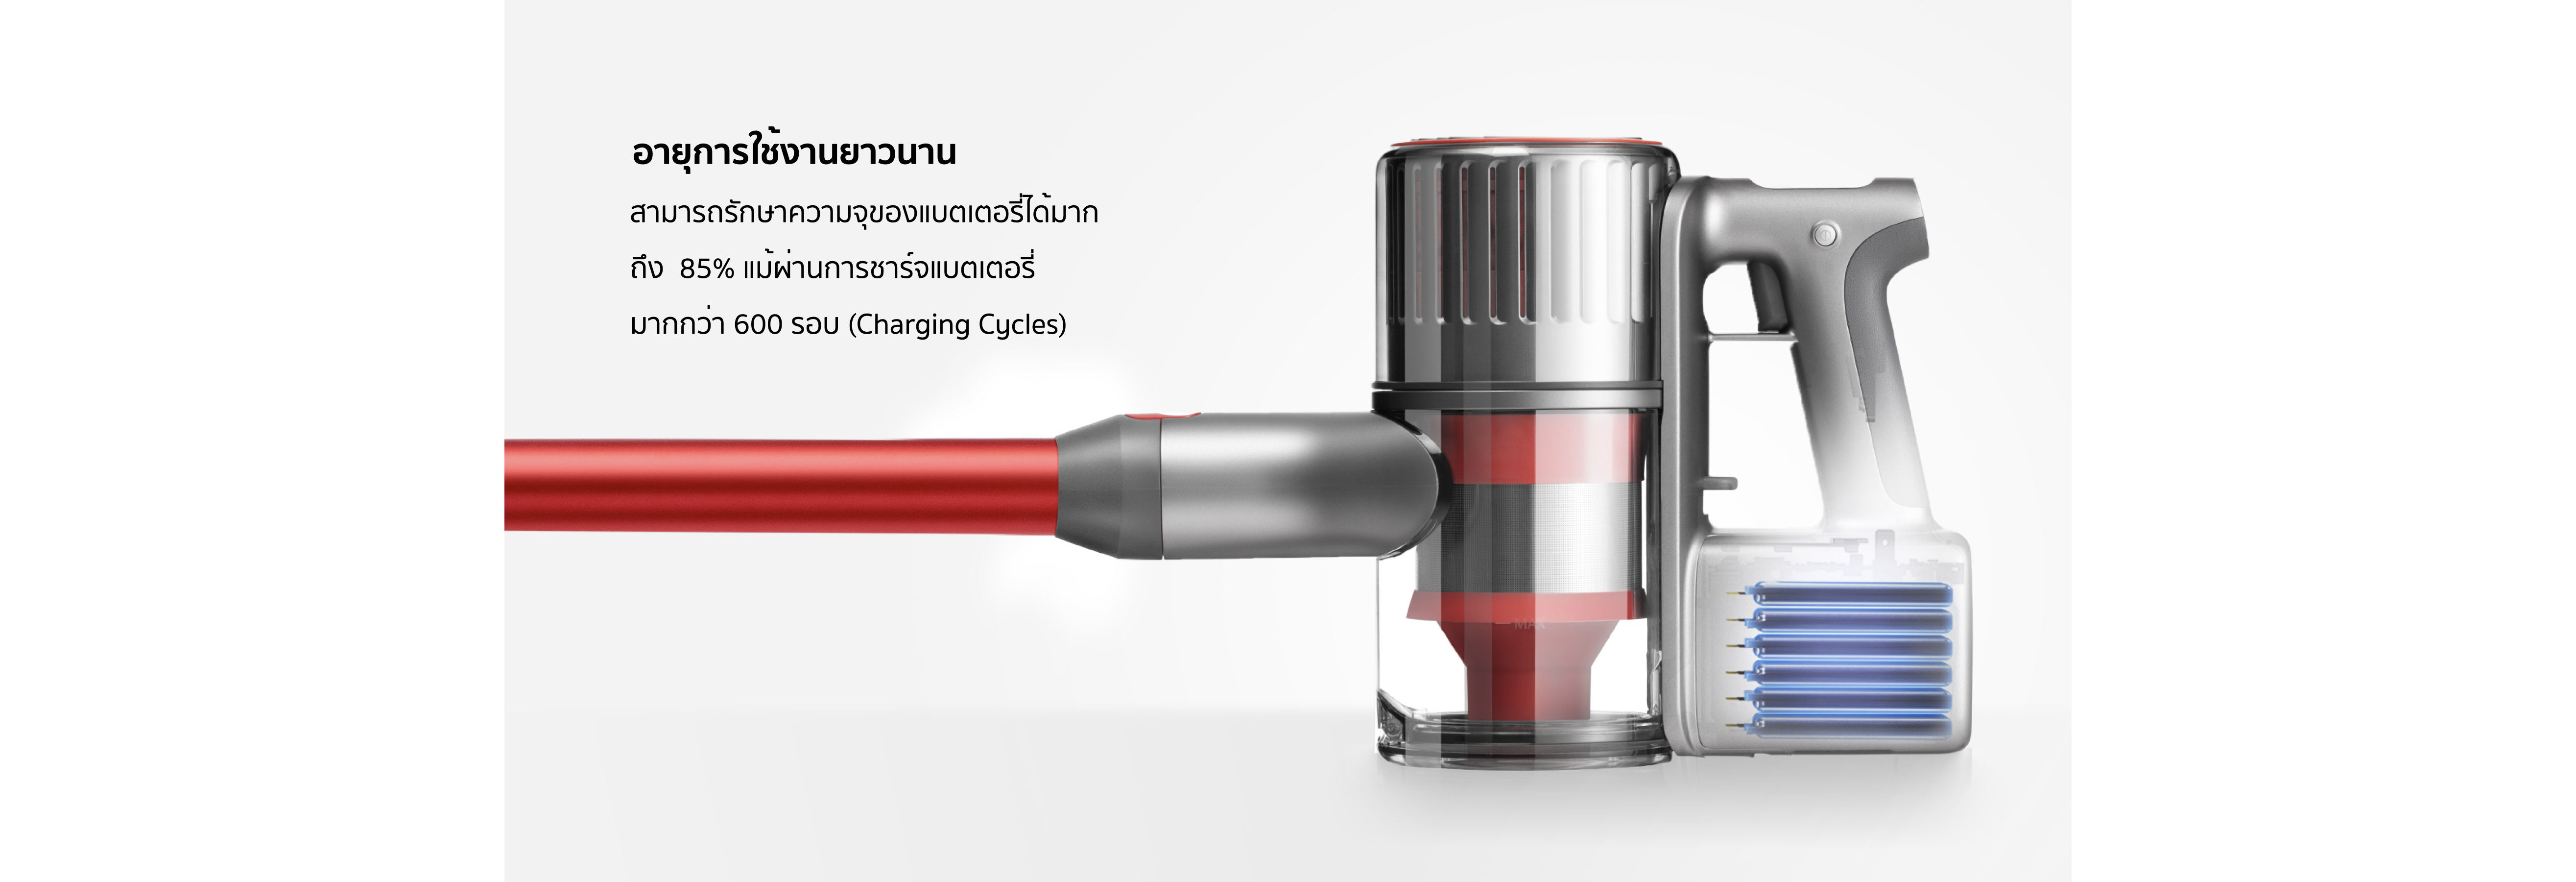 เครื่องดูดฝุ่น Roborock H6 Cordless Handheld Stick Vacuum Cleaner - Built for Deeper Longer Cleaner